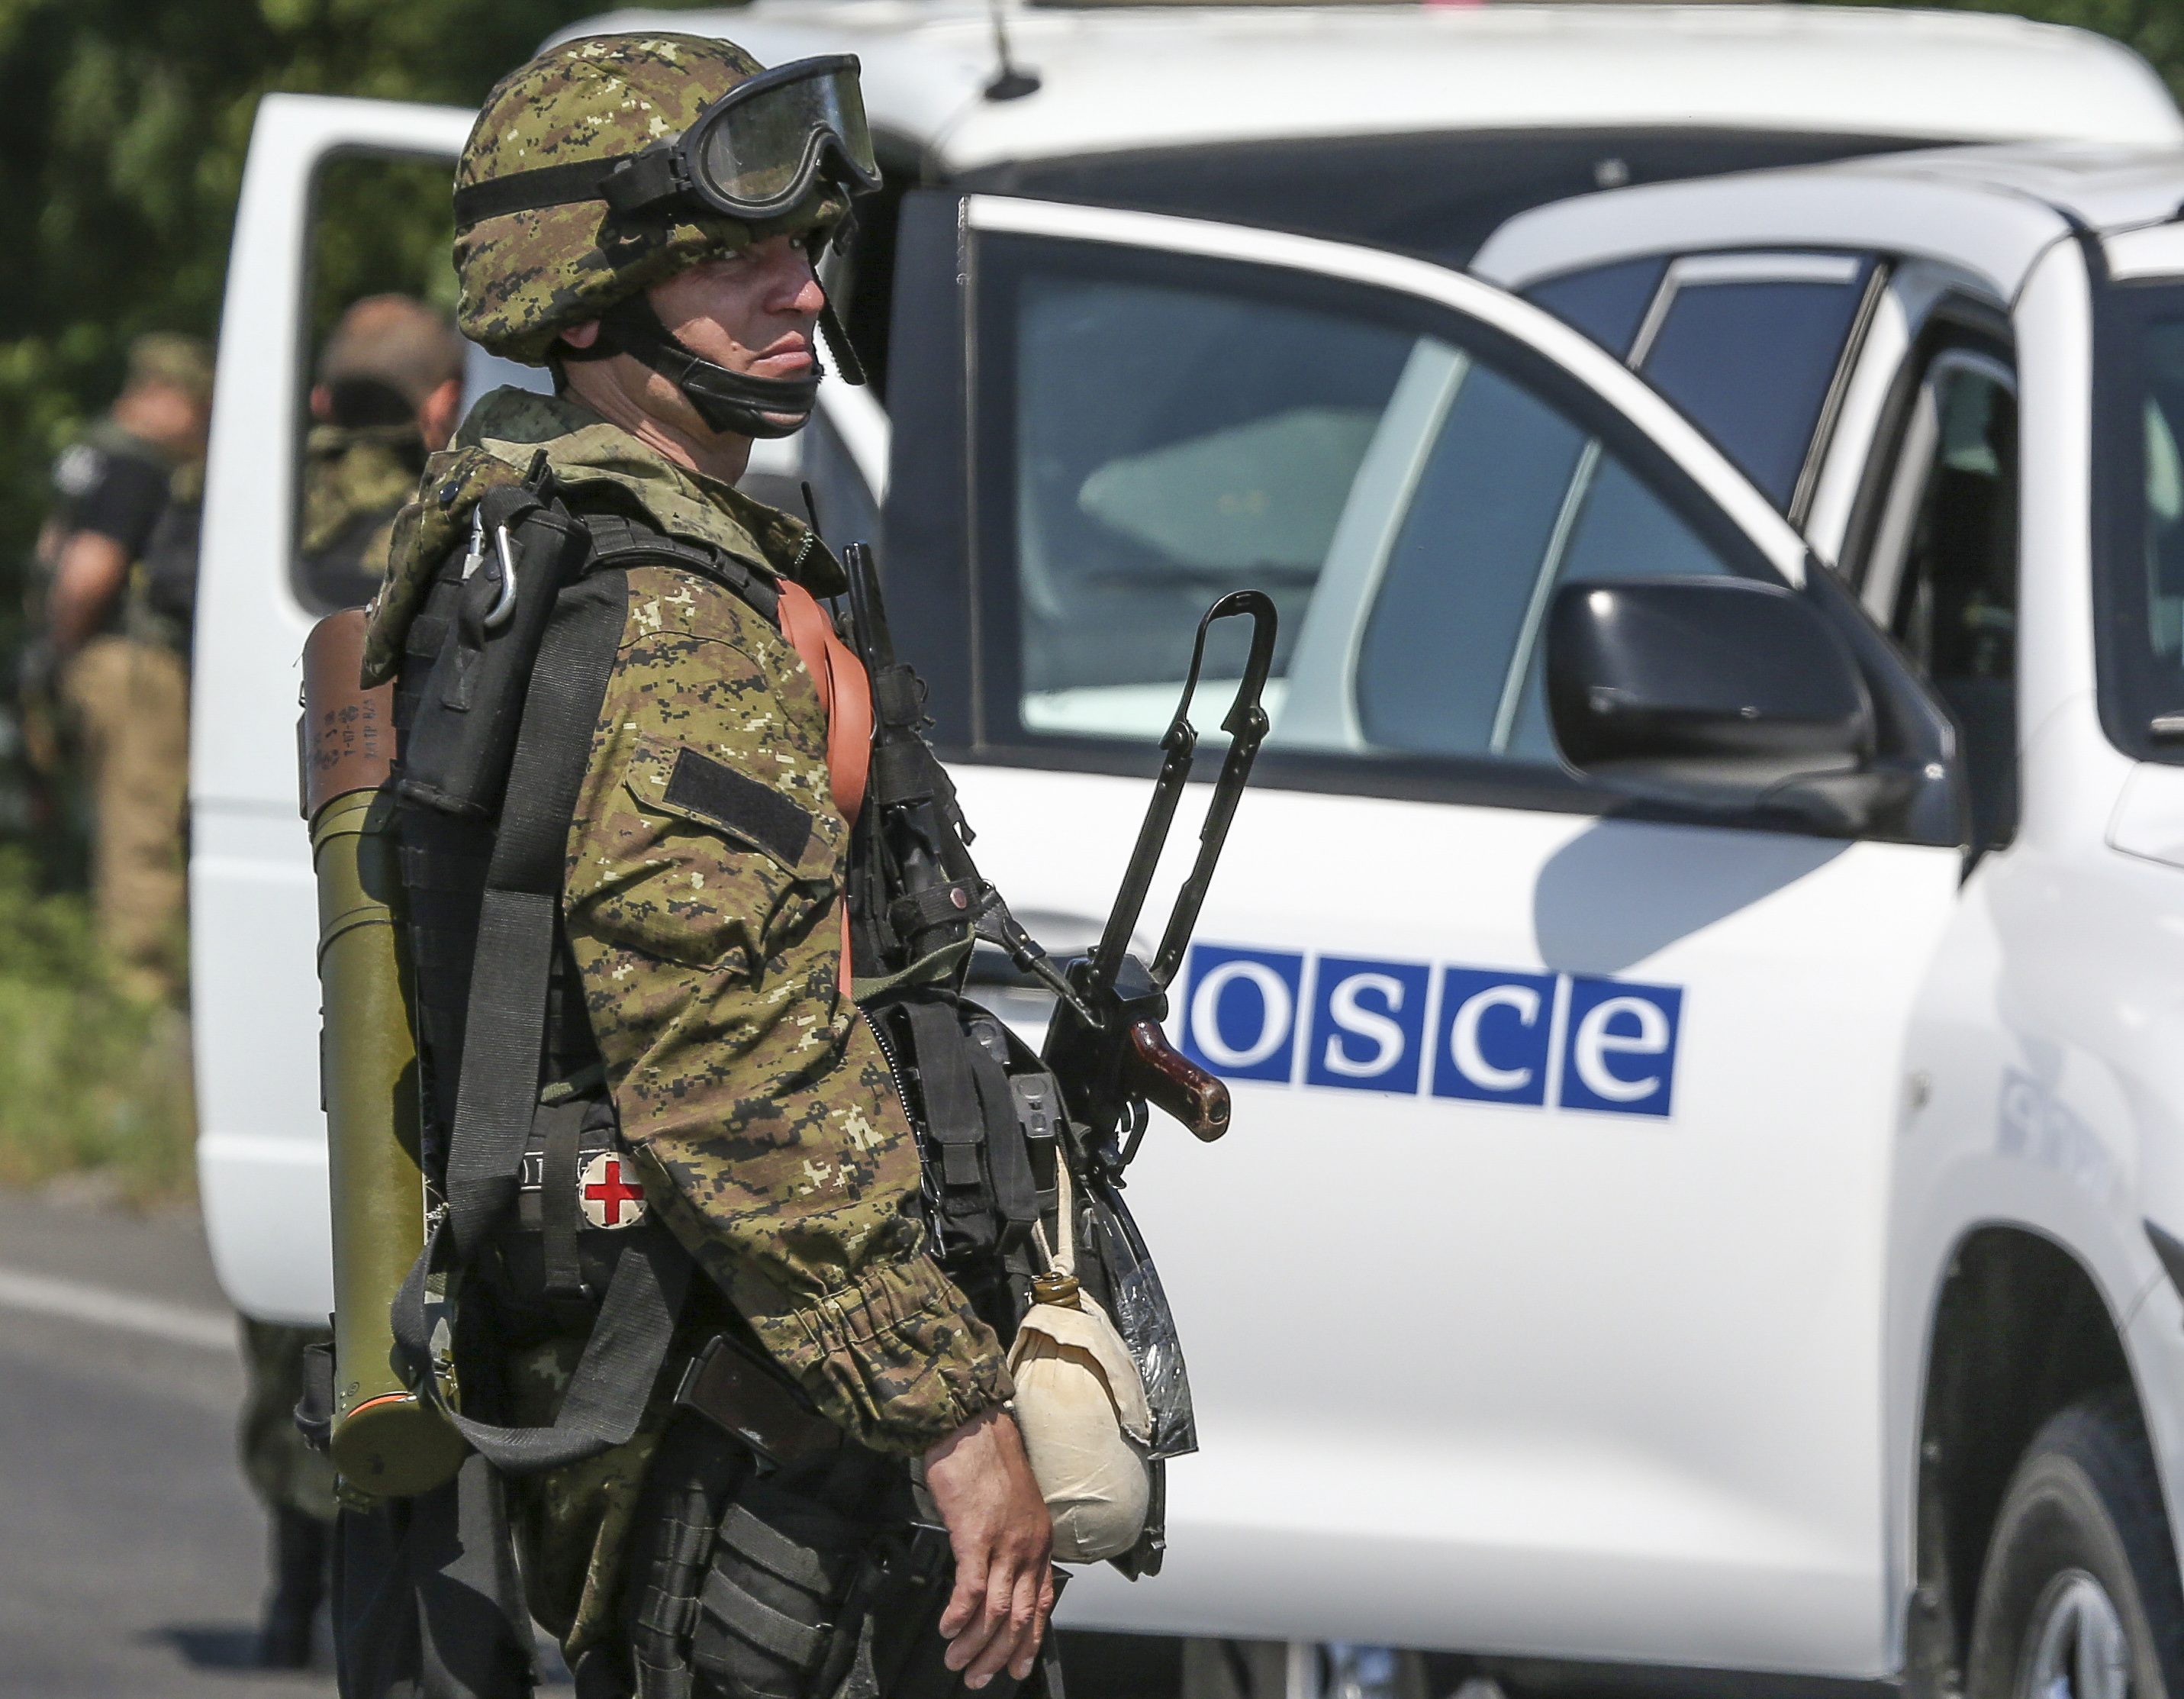 ОБСЕ: риск эскалации конфликта в Донбассе сохраняется, буферная зона по-прежнему опасна